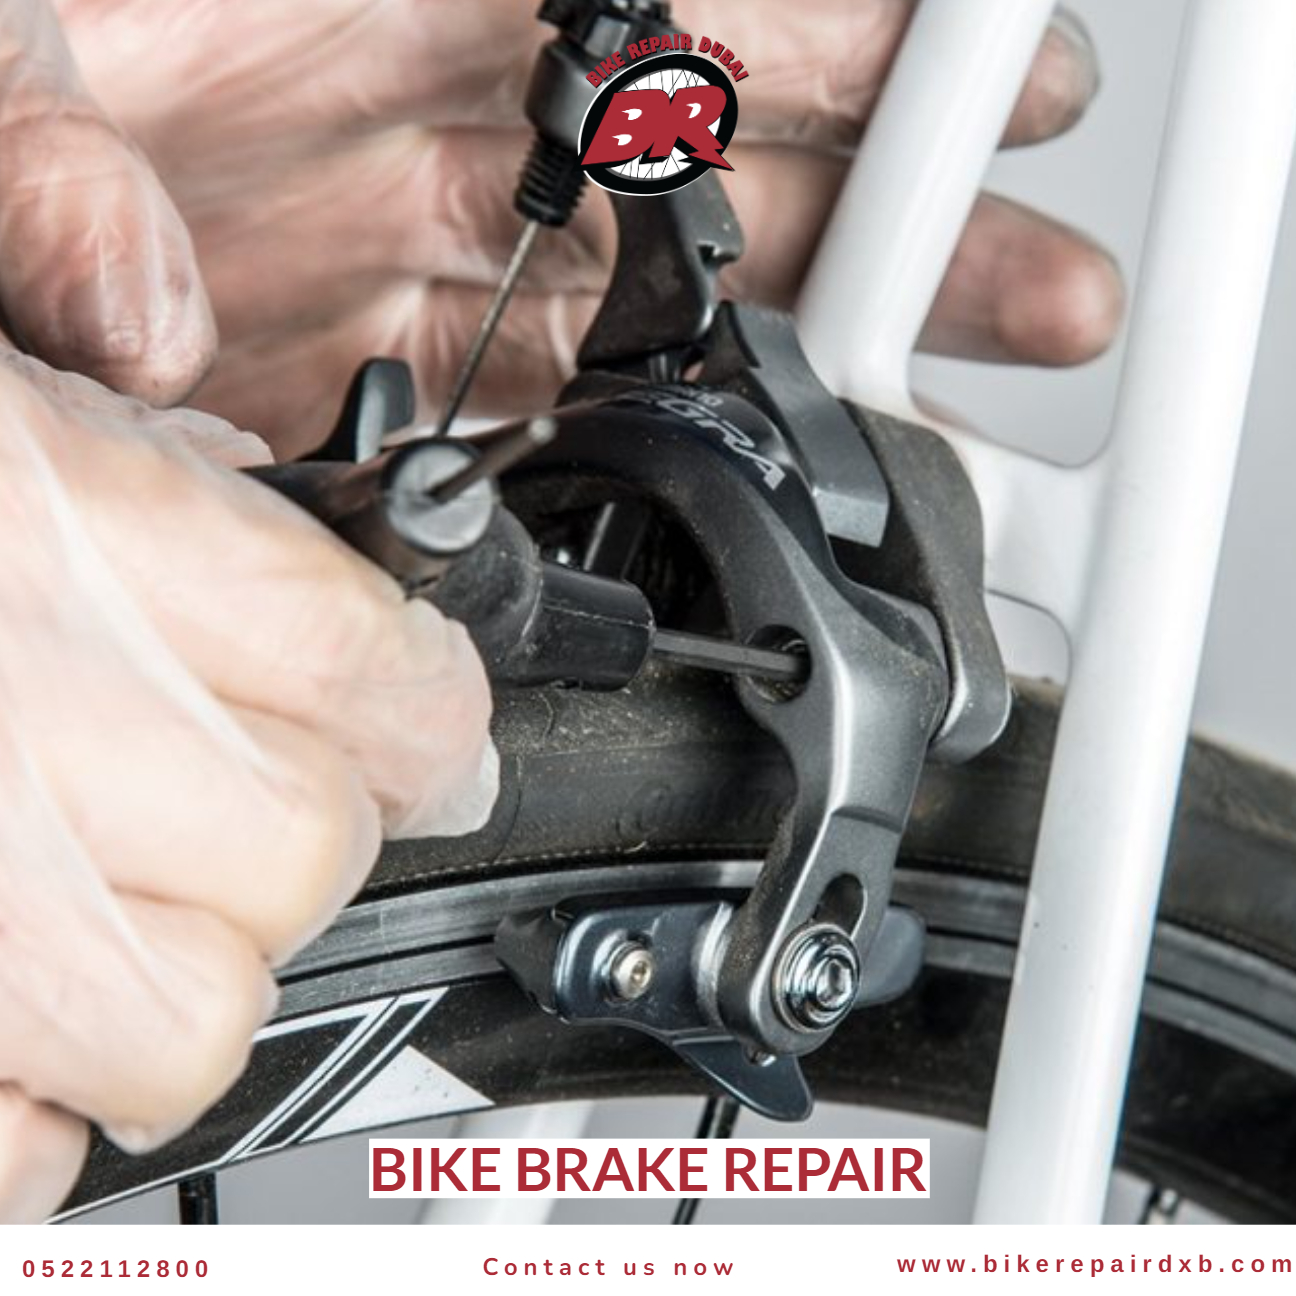 Bike brake repair